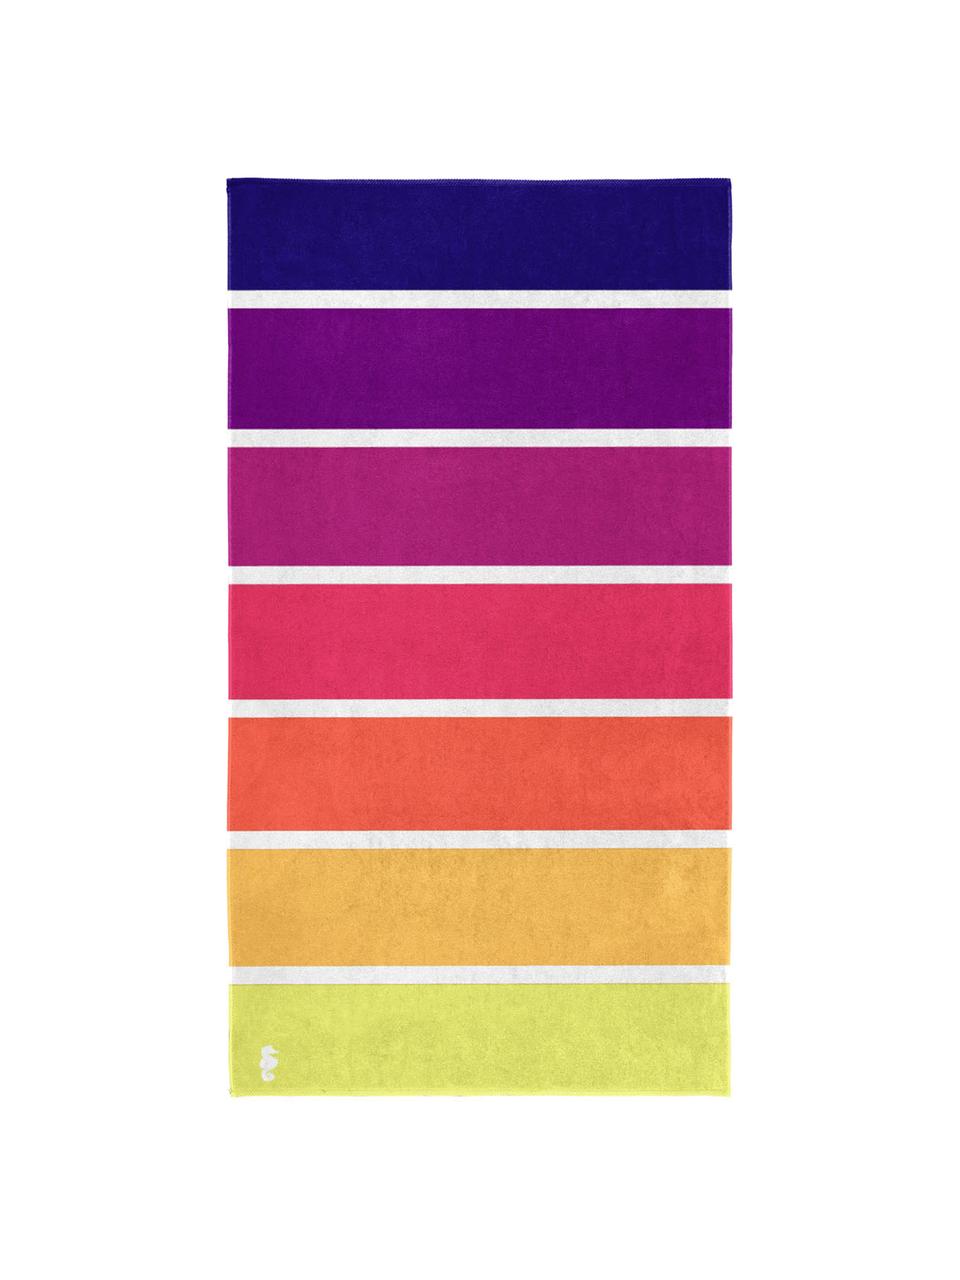 Ręcznik plażowy Marbella, Bawełna, Żółty, pomarańczowy, różowy, purpurowy, fioletowy, S 100 x D 180 cm